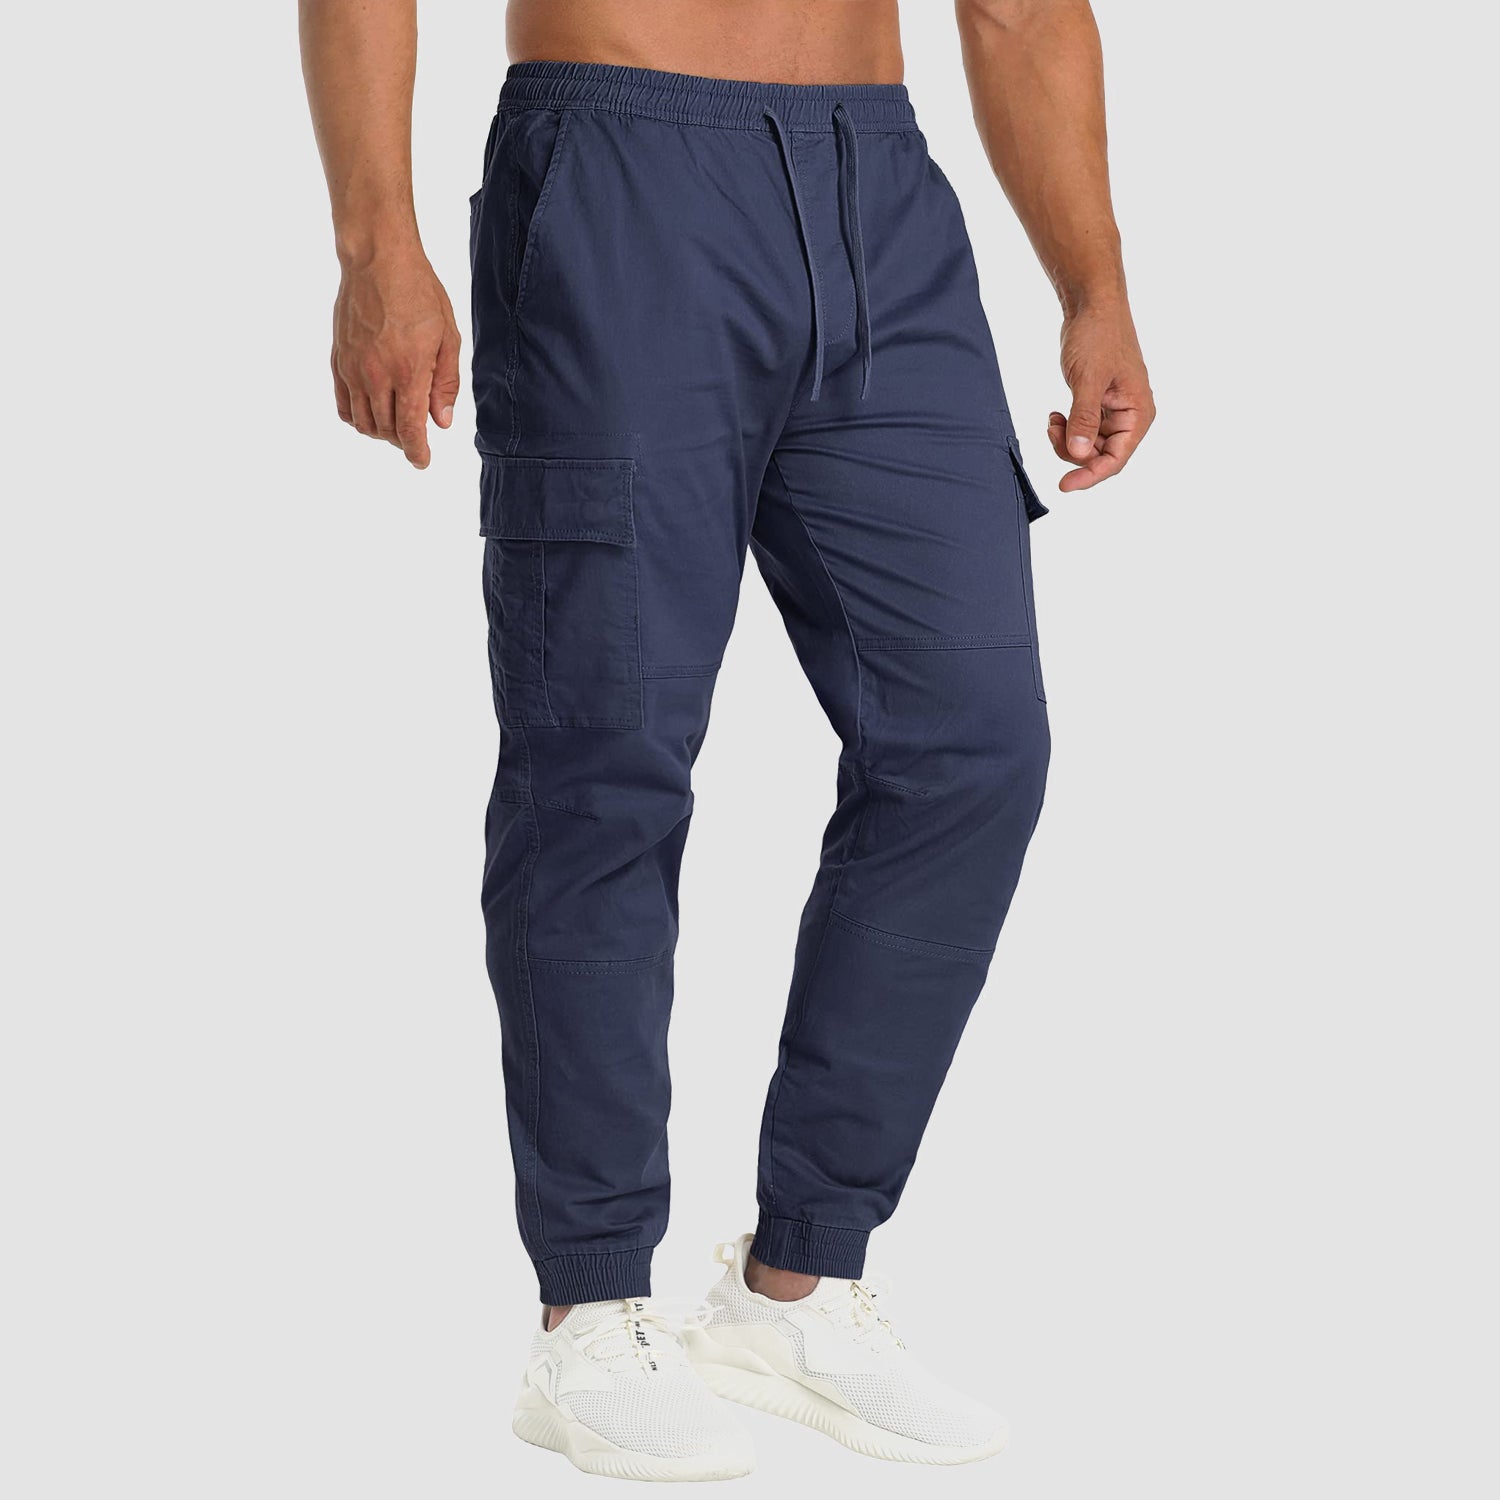 Men's Navy Casual Cargo Pants